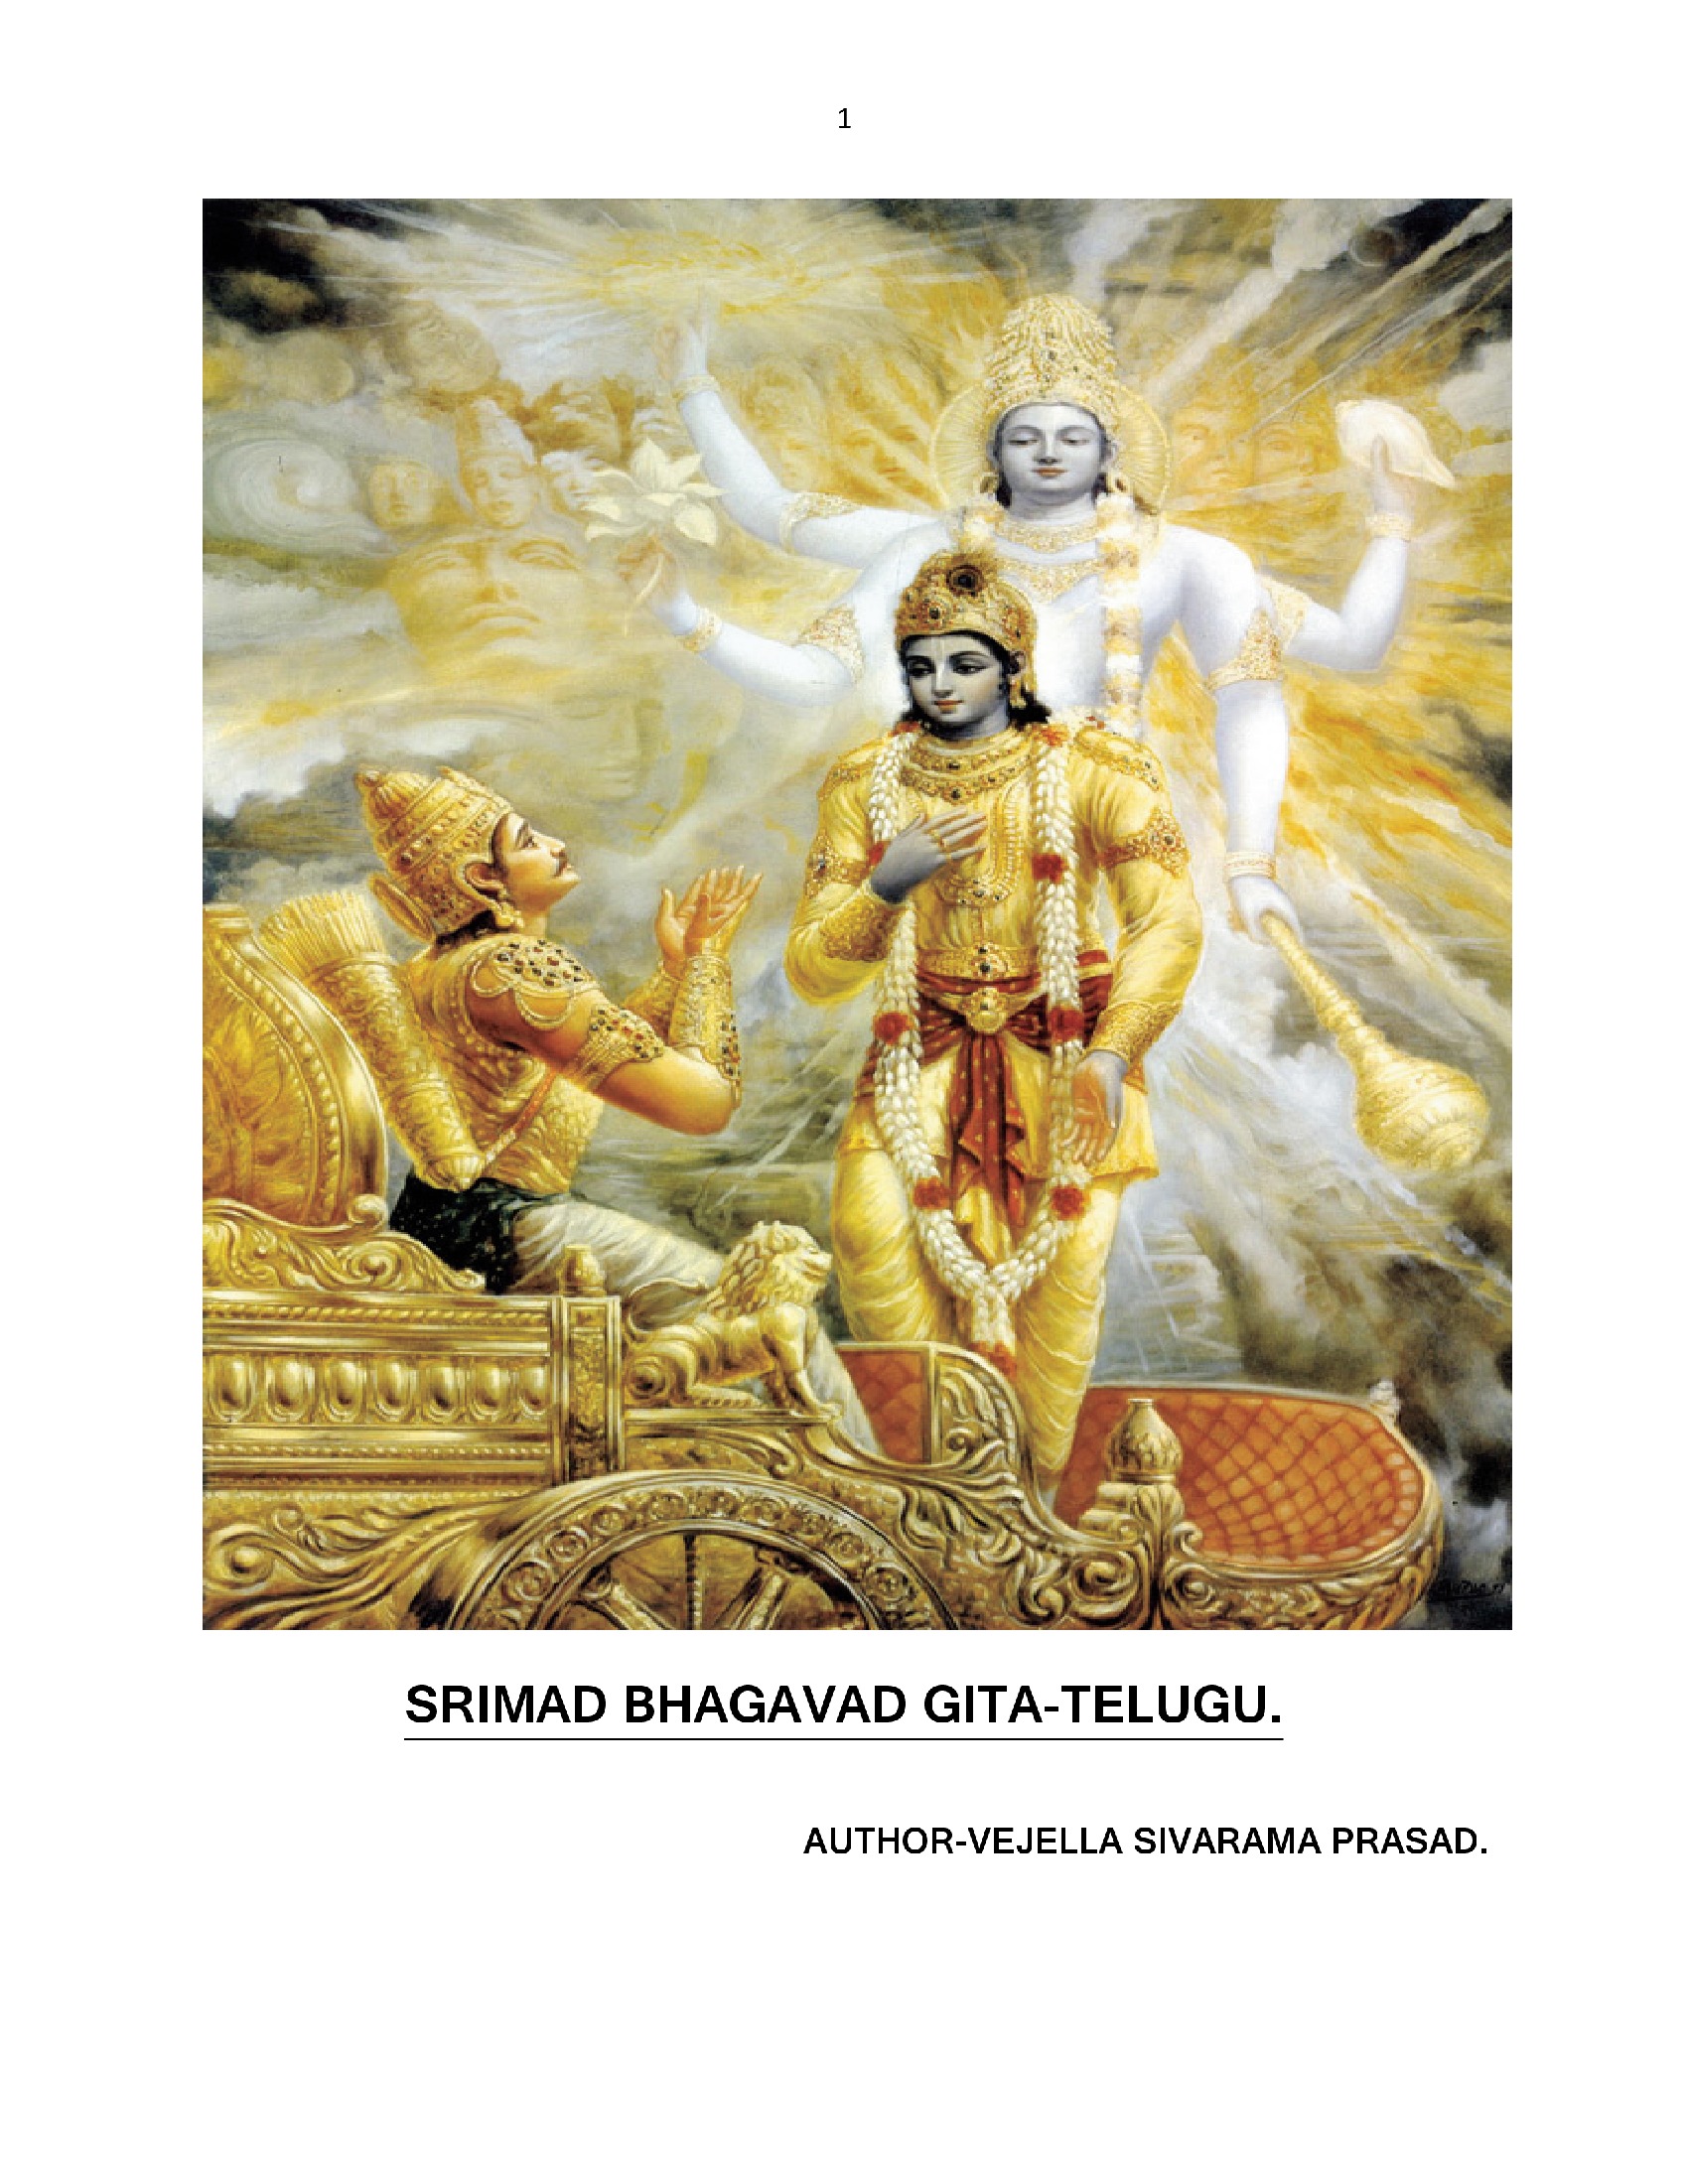 bhagavad gita by adi shankaracharya pdf